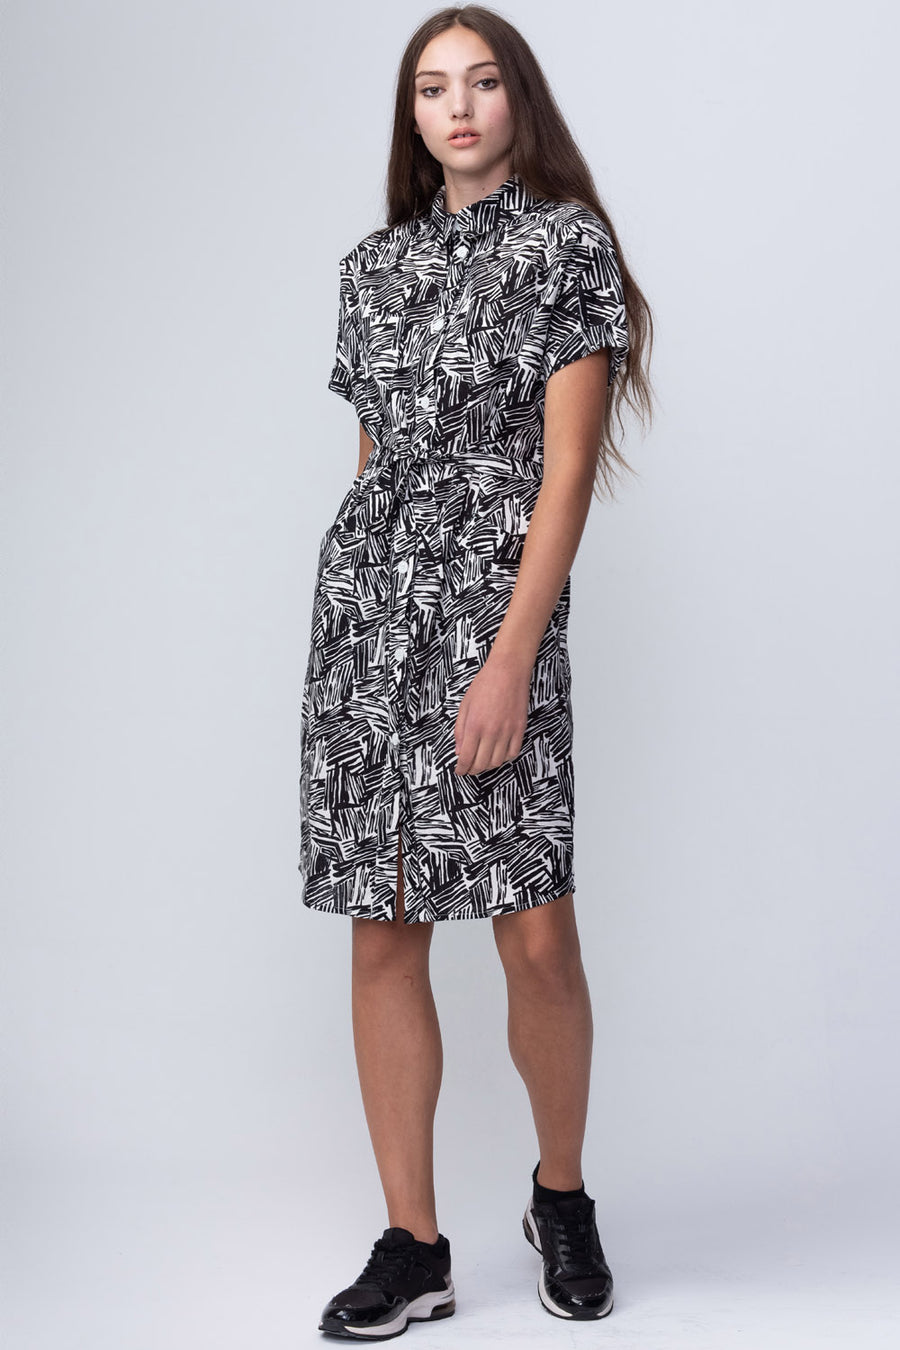 SAMPLE | Linwood Printed Dress | XS